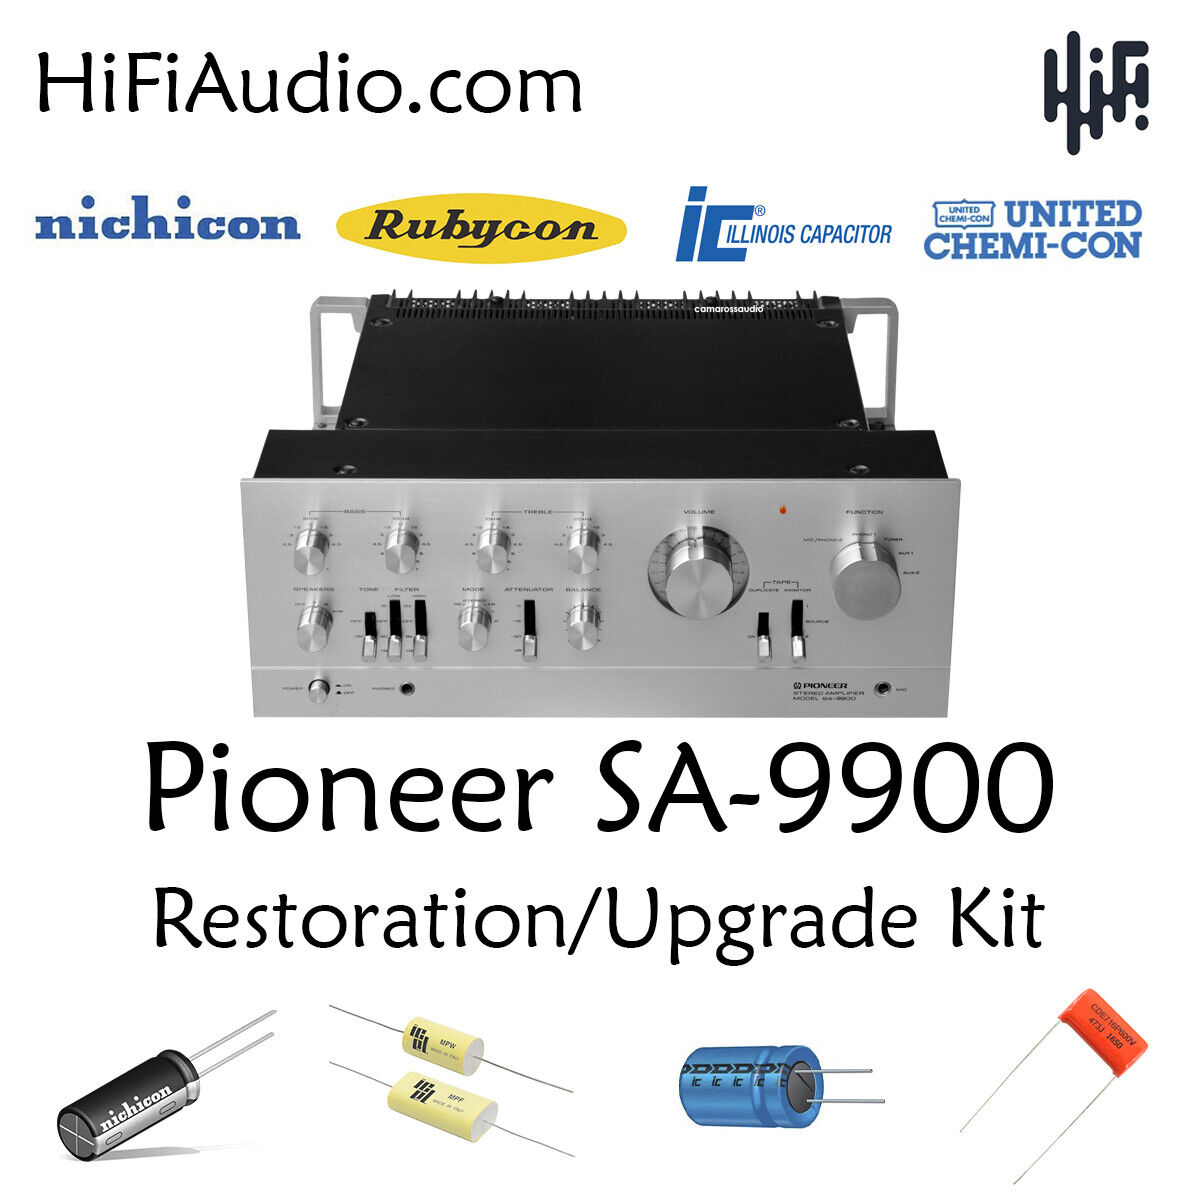 Pioneer SA- 9900 restoration kit